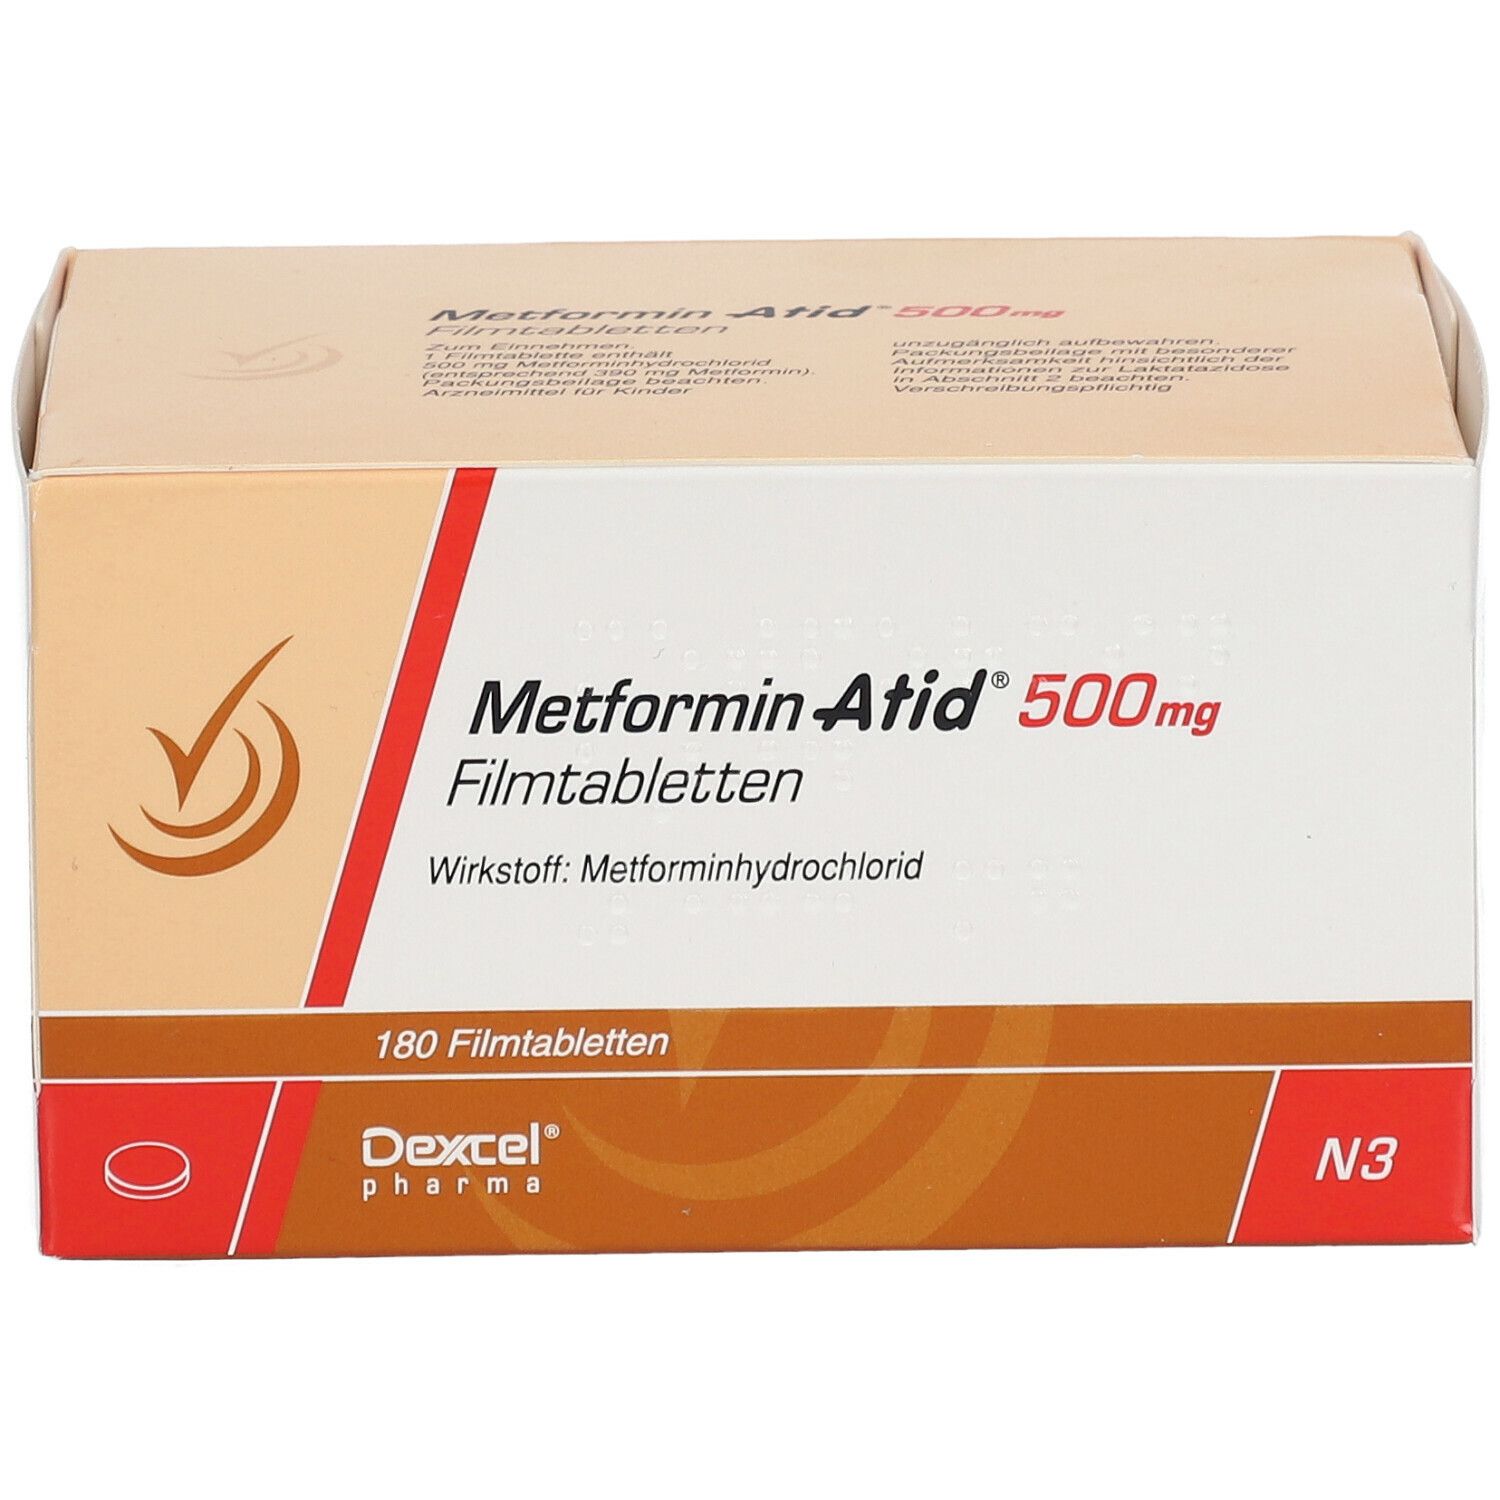 Metformin Atid® 500 mg